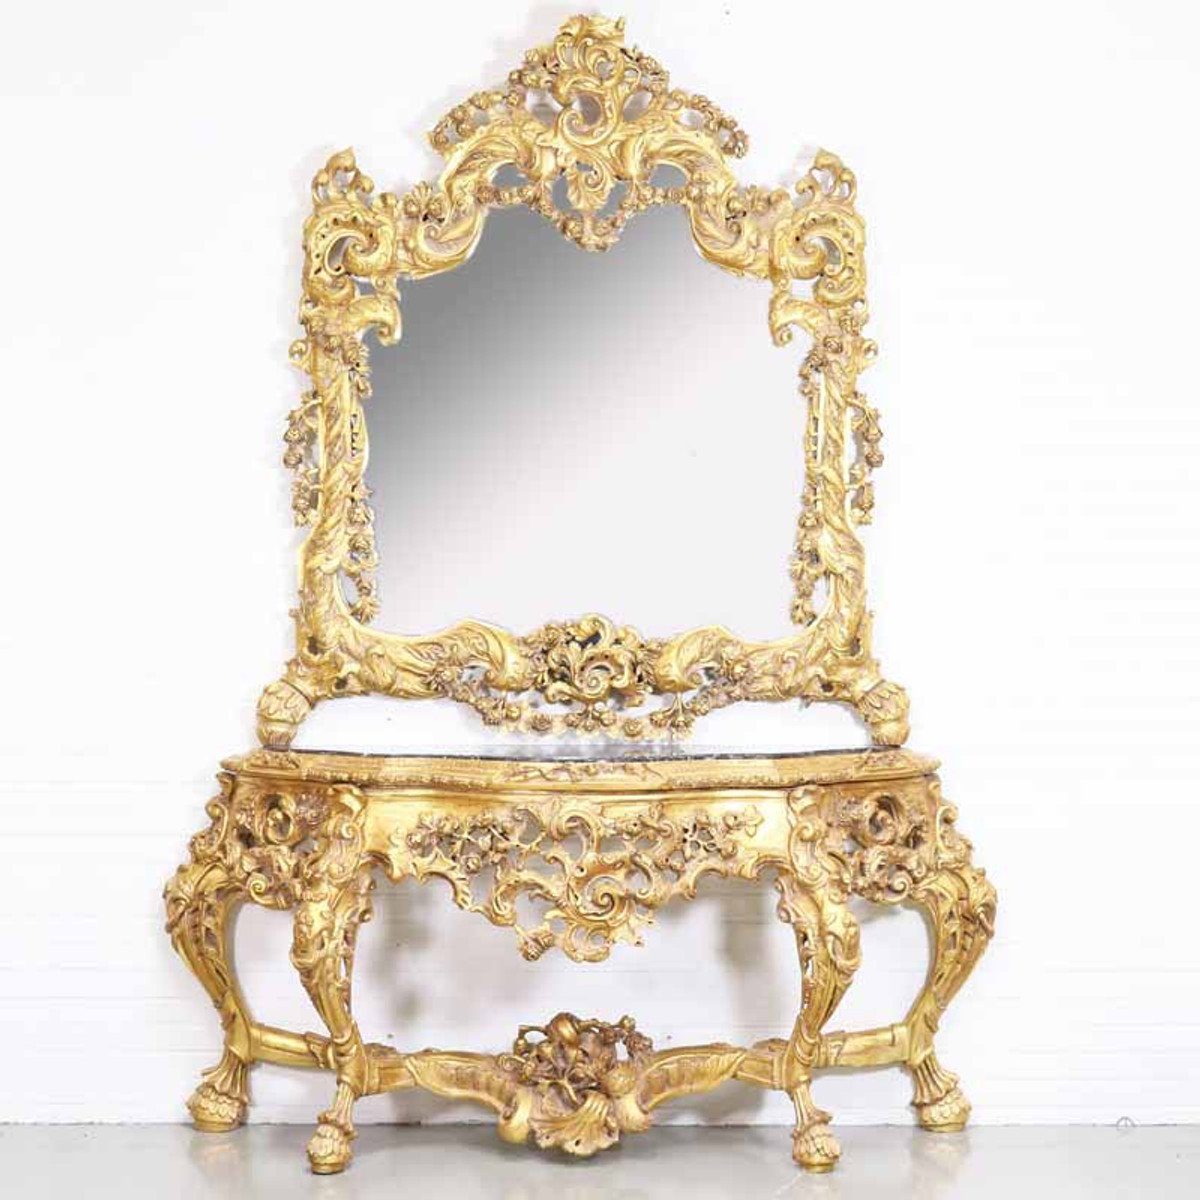 Casa Padrino Barockspiegel Luxus Barock Spiegelkonsole mit Marmorplatte Gold 180 x H270 cm - Hotel Möbel - Konsole mit Spiegel